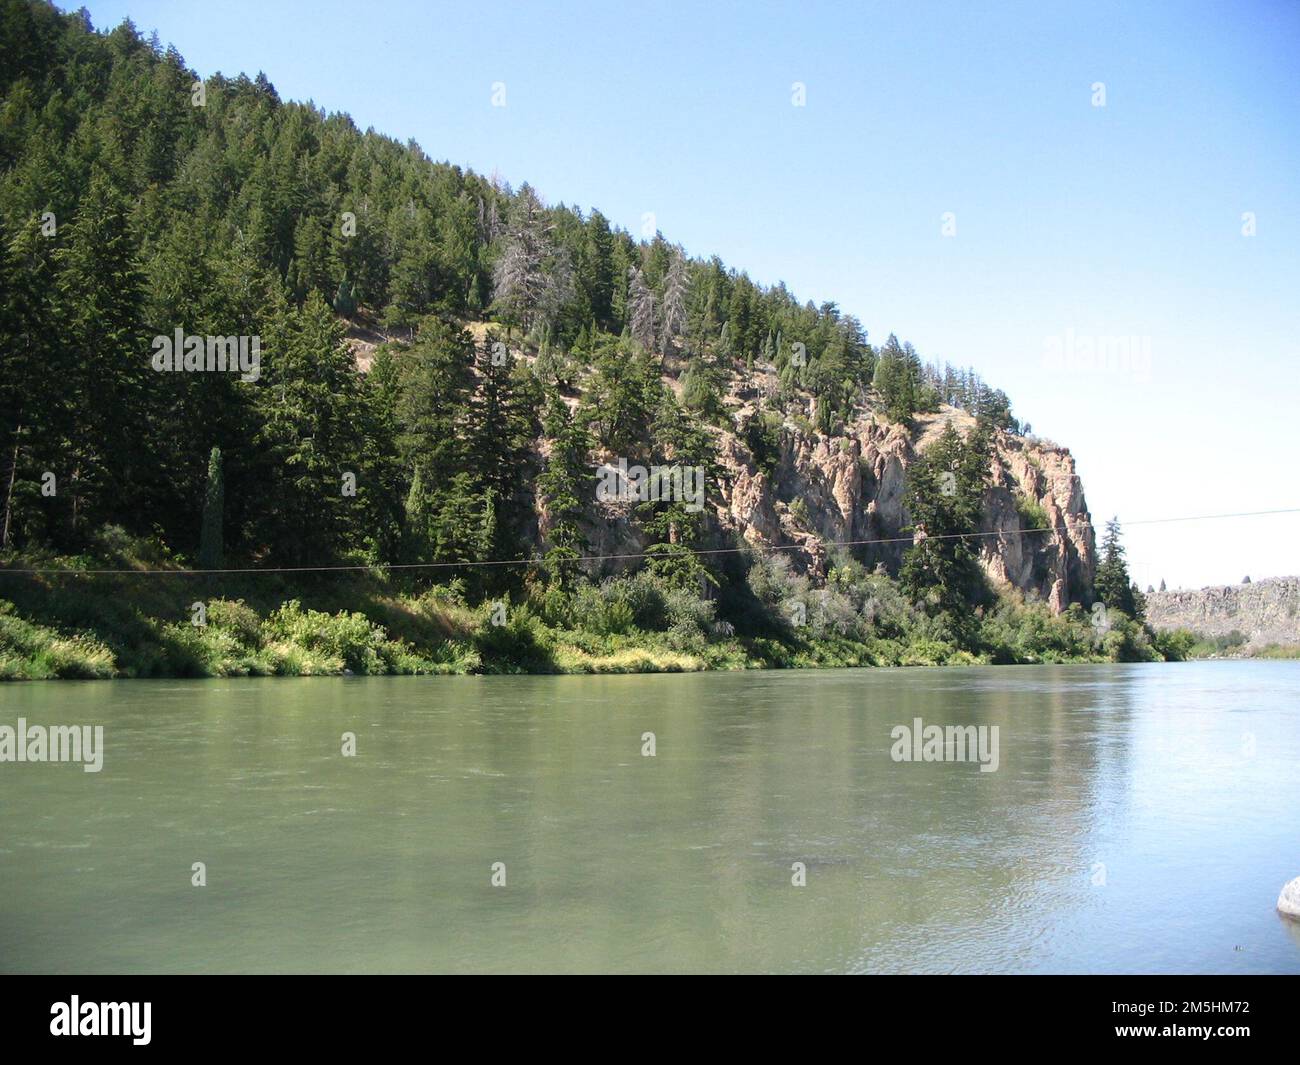 Pioneer Historic Byway - Schimmernde Pines. Die Kiefern auf diesem Berg spiegeln sich im schimmernden Wasser des Stausees wider, das vom Hells Canyon Dam gebildet wird. Lage: Hells Canyon Dam, Idaho (45,235° N 116,704° W) Stockfoto